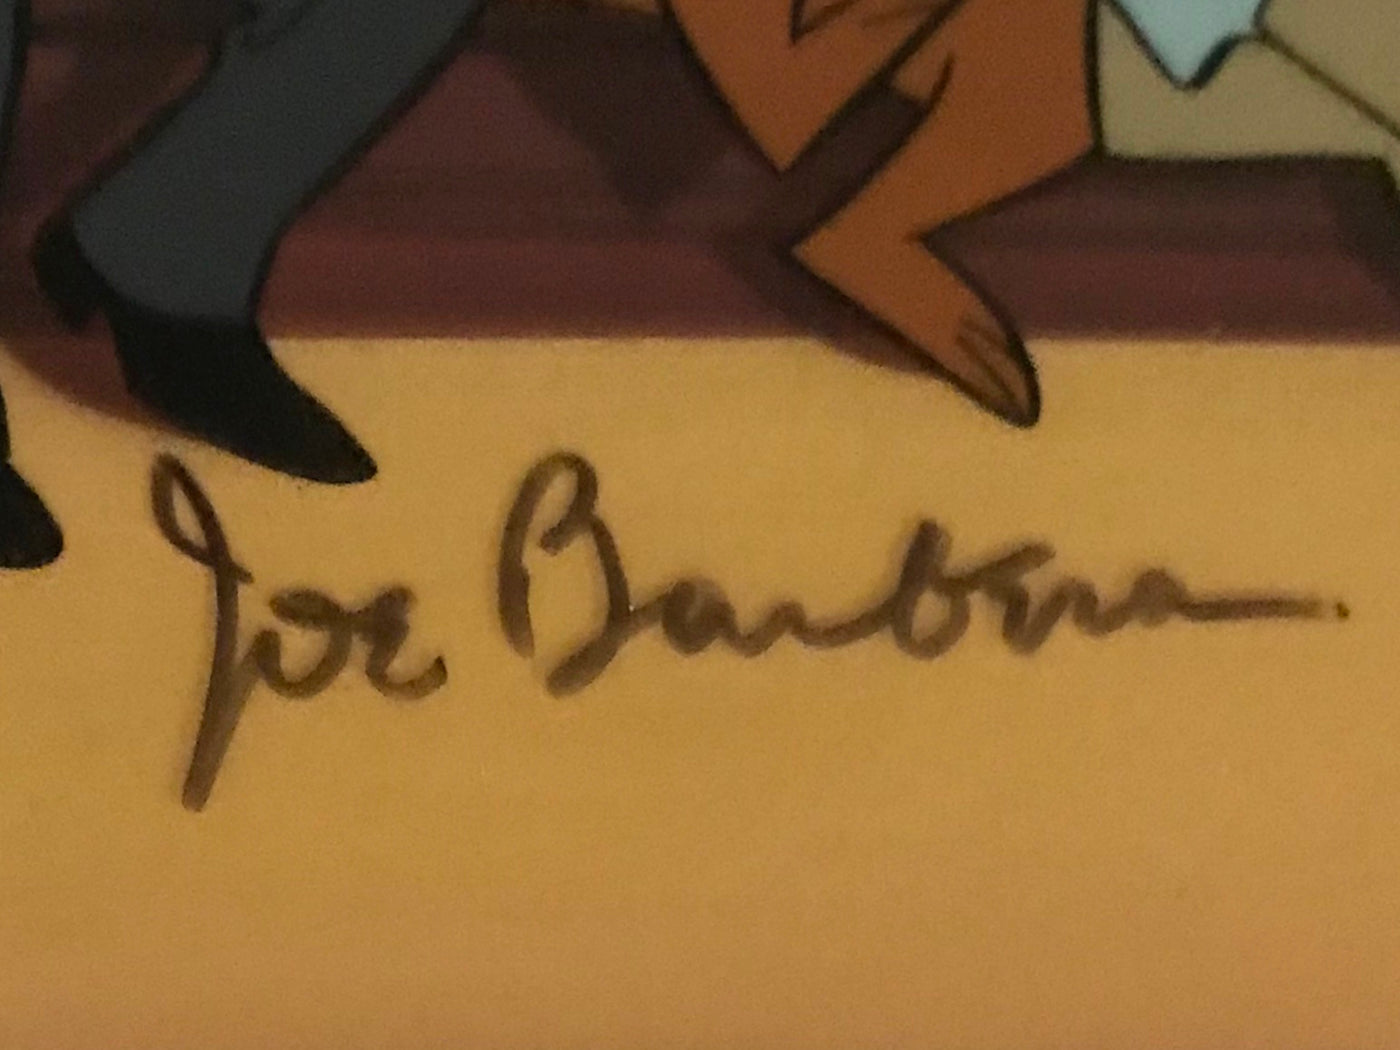 Original Hanna Barbera Flintstones Limited Edition Cel, All Together Now